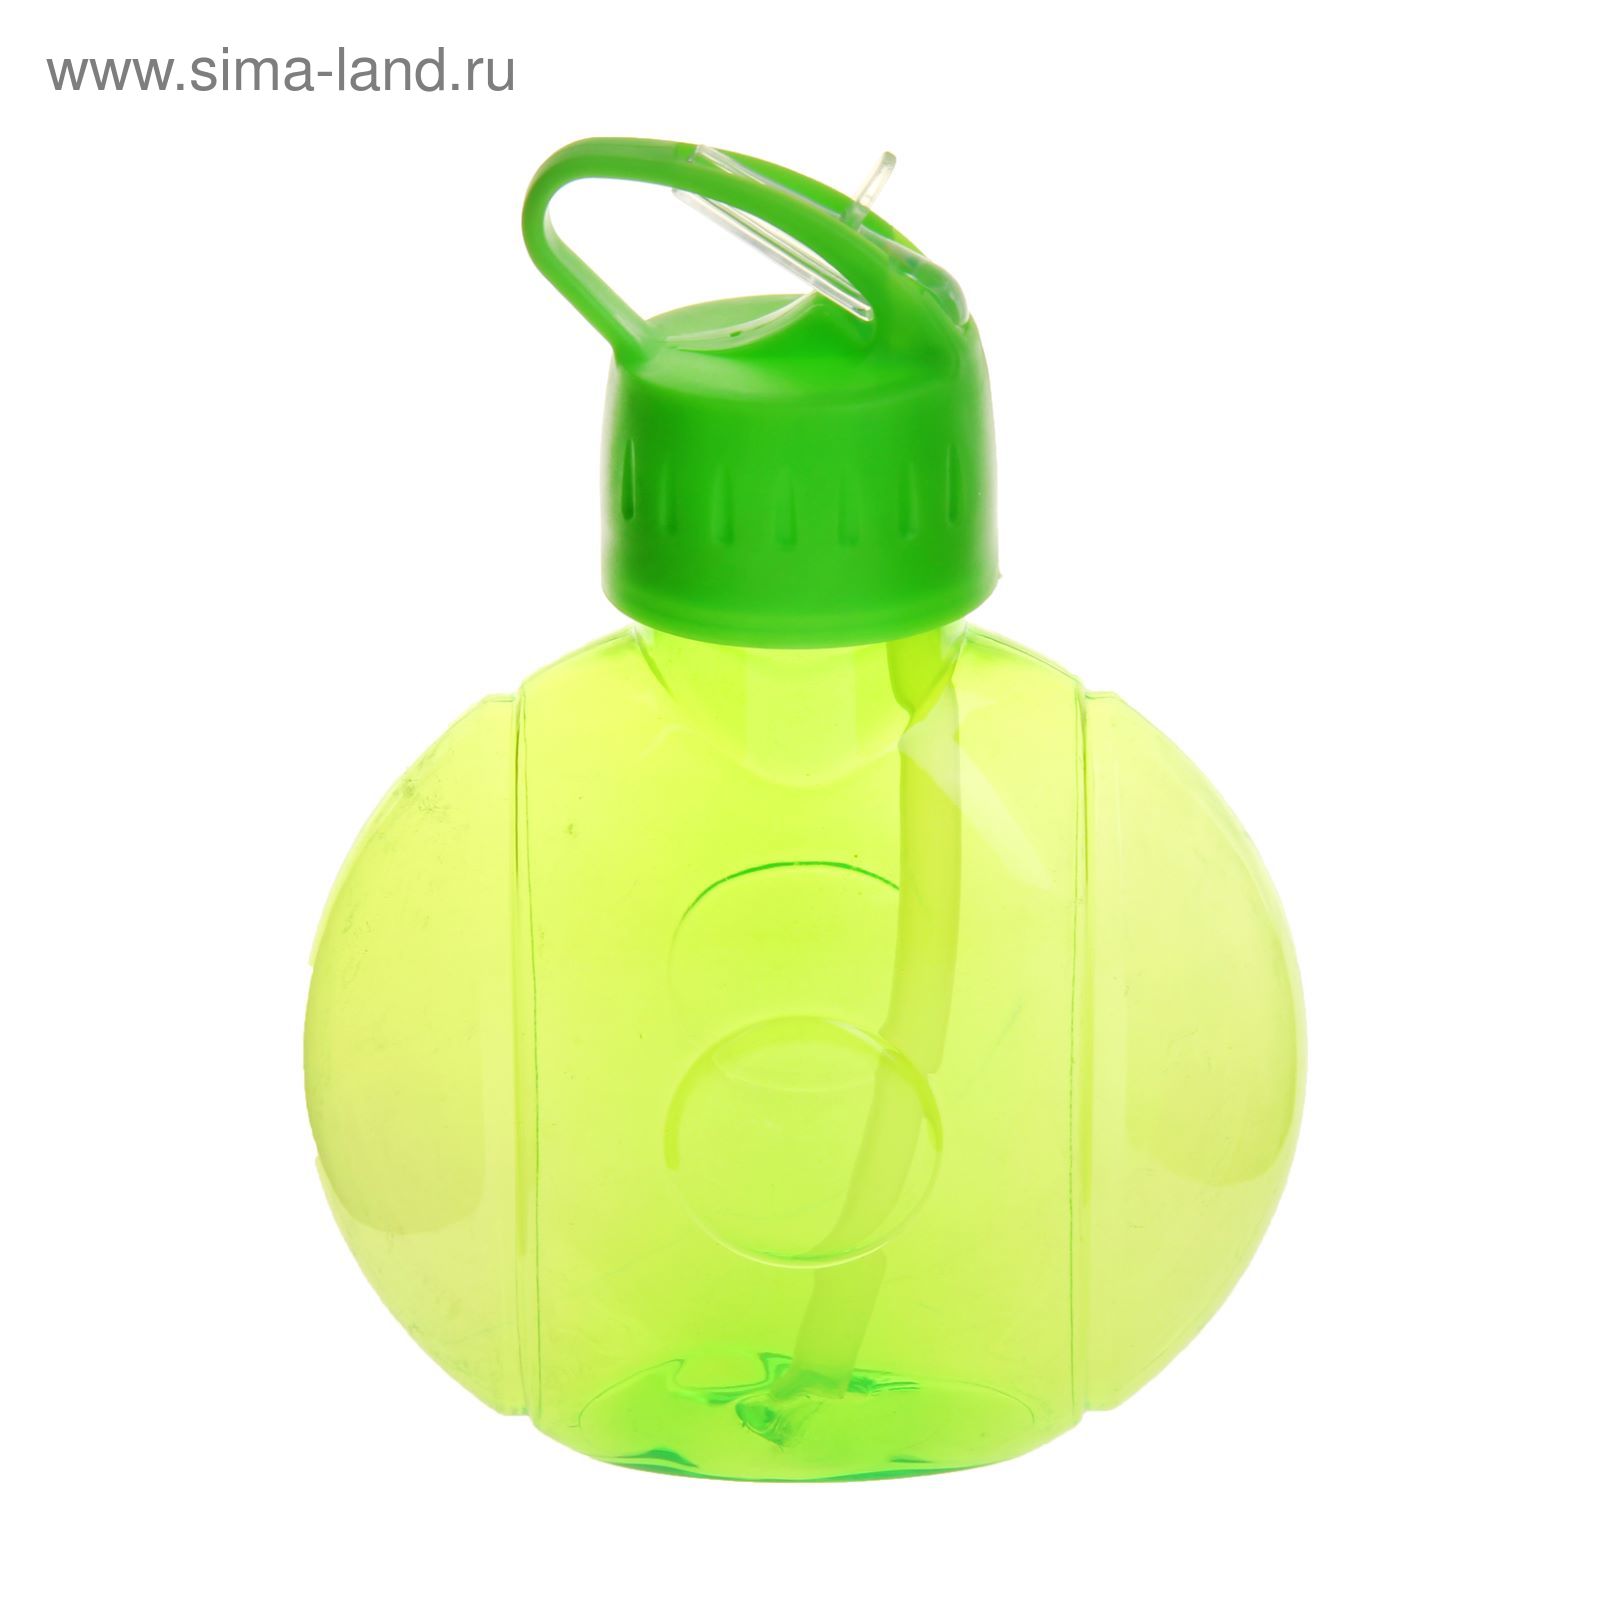 Фляжка-бутылка круглая, 650 мл, зелёная